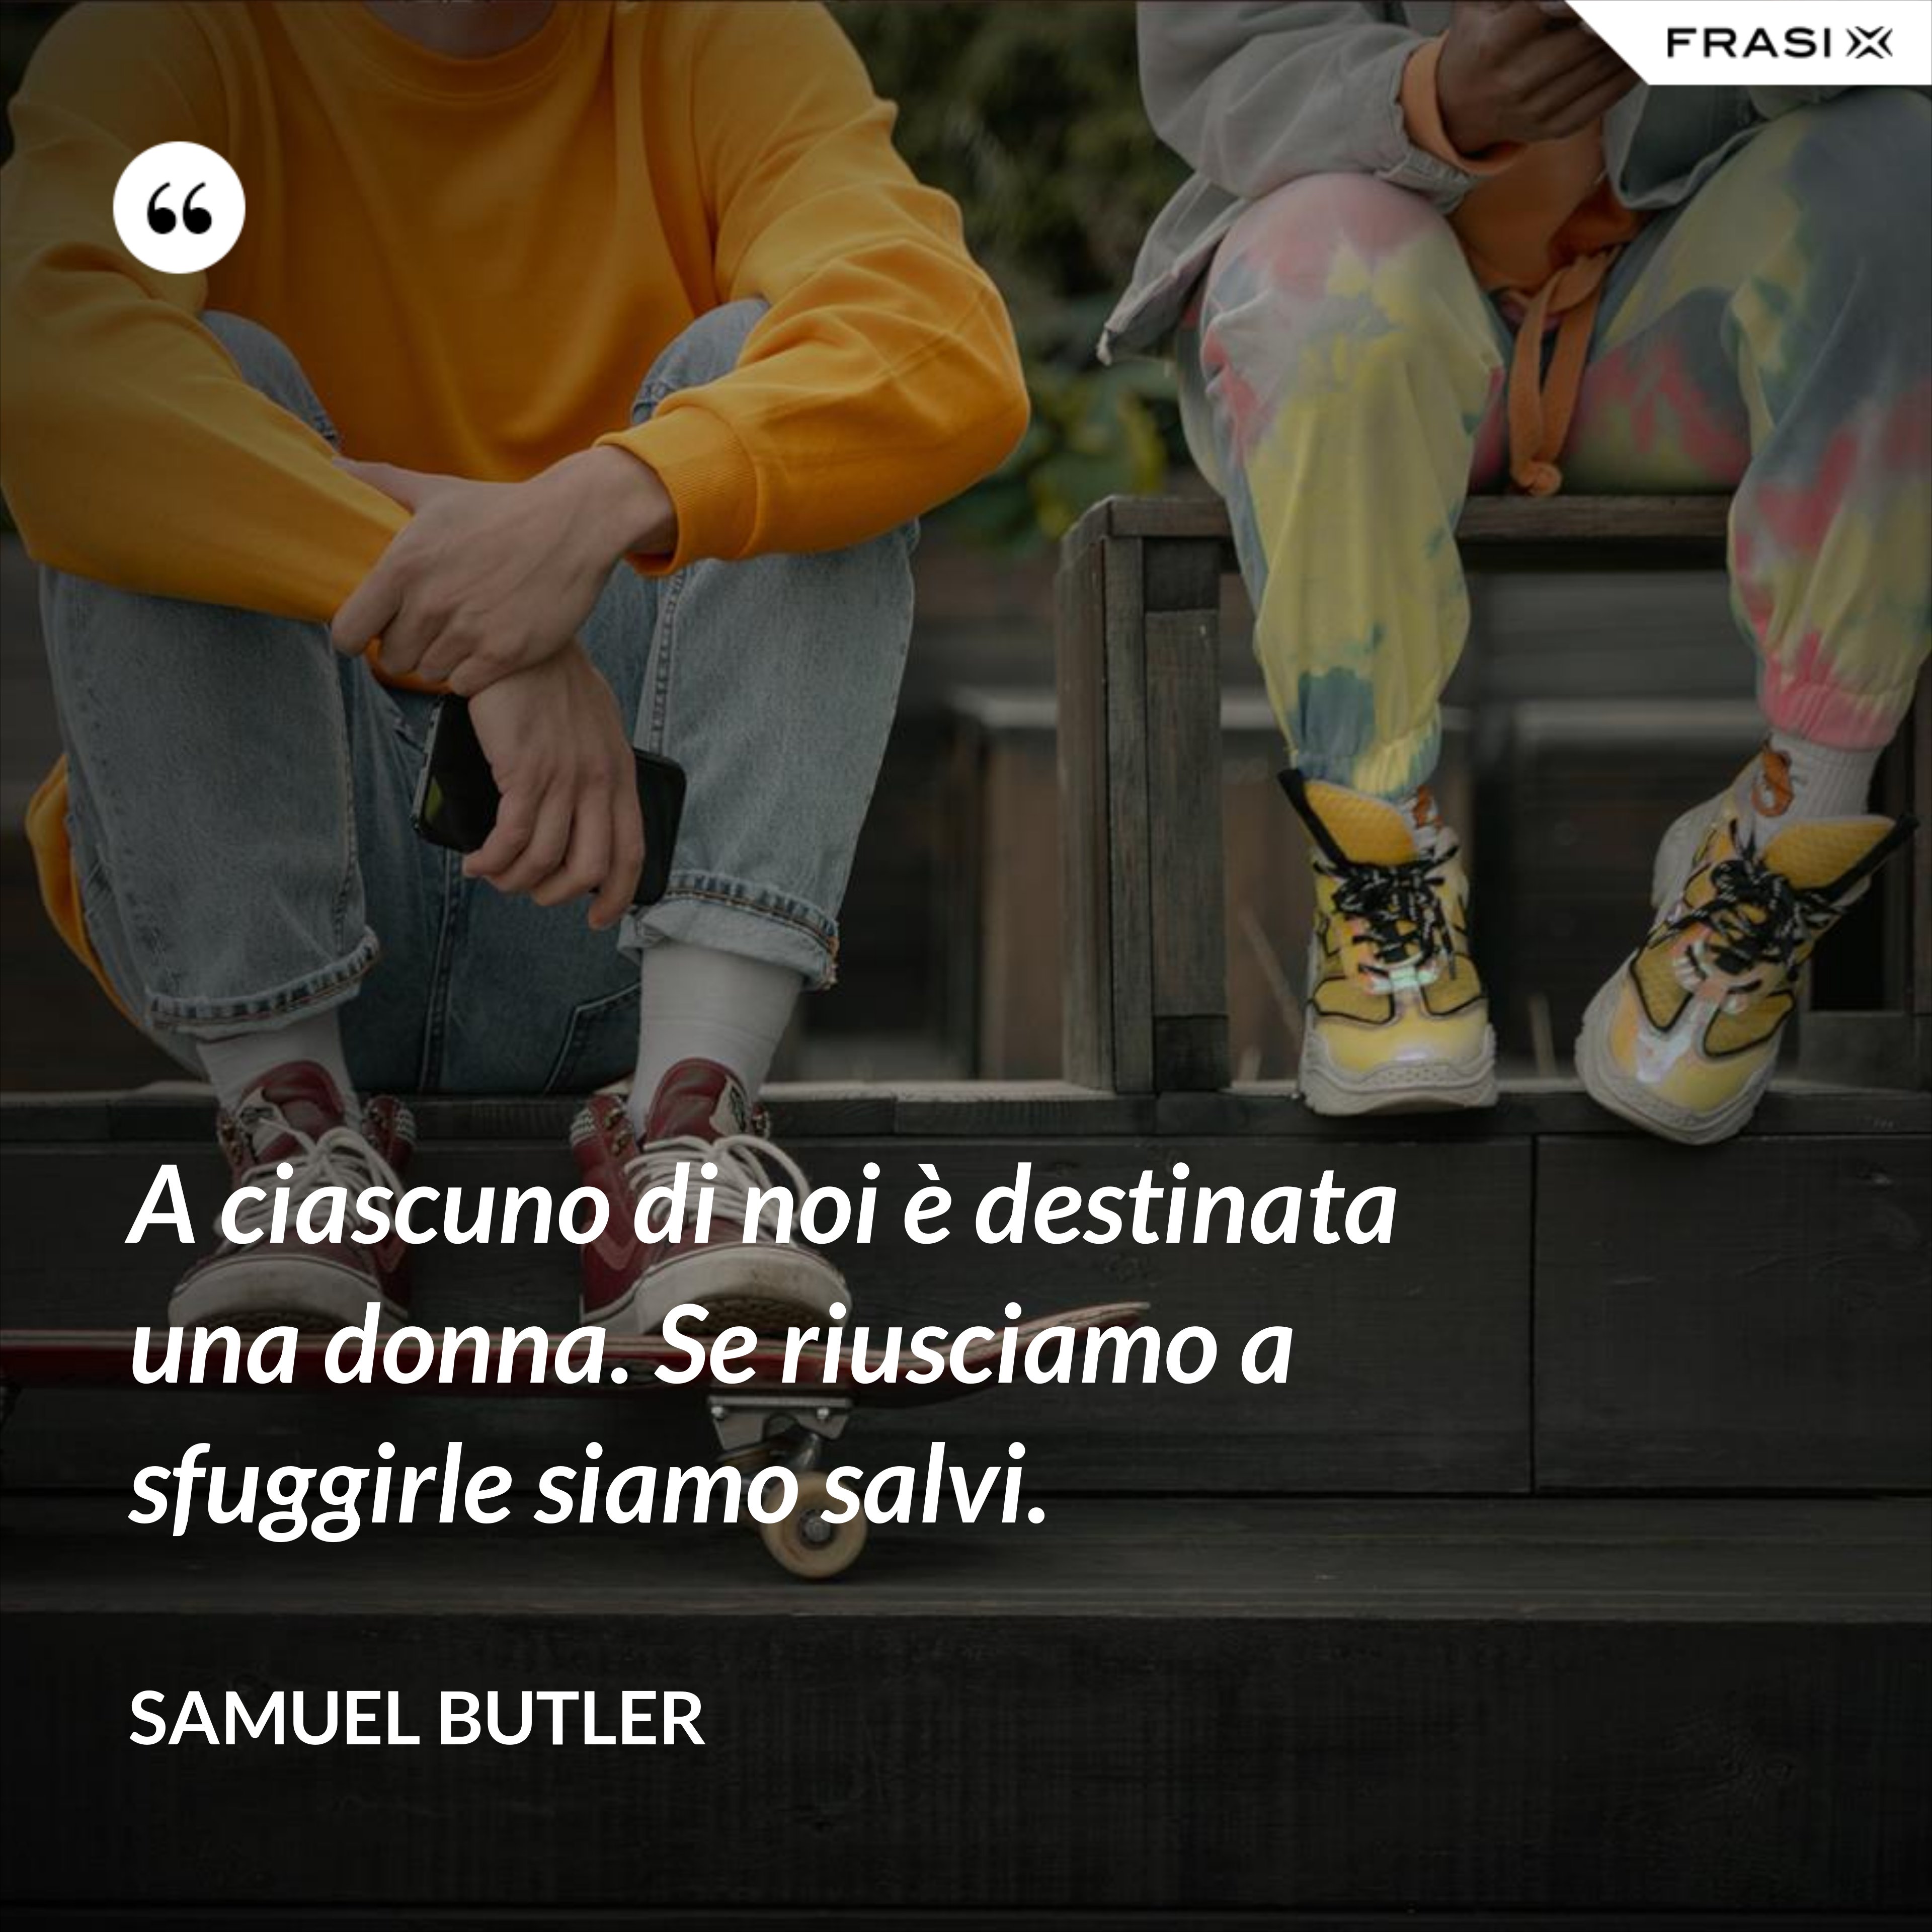 A ciascuno di noi è destinata una donna. Se riusciamo a sfuggirle siamo salvi. - Samuel Butler